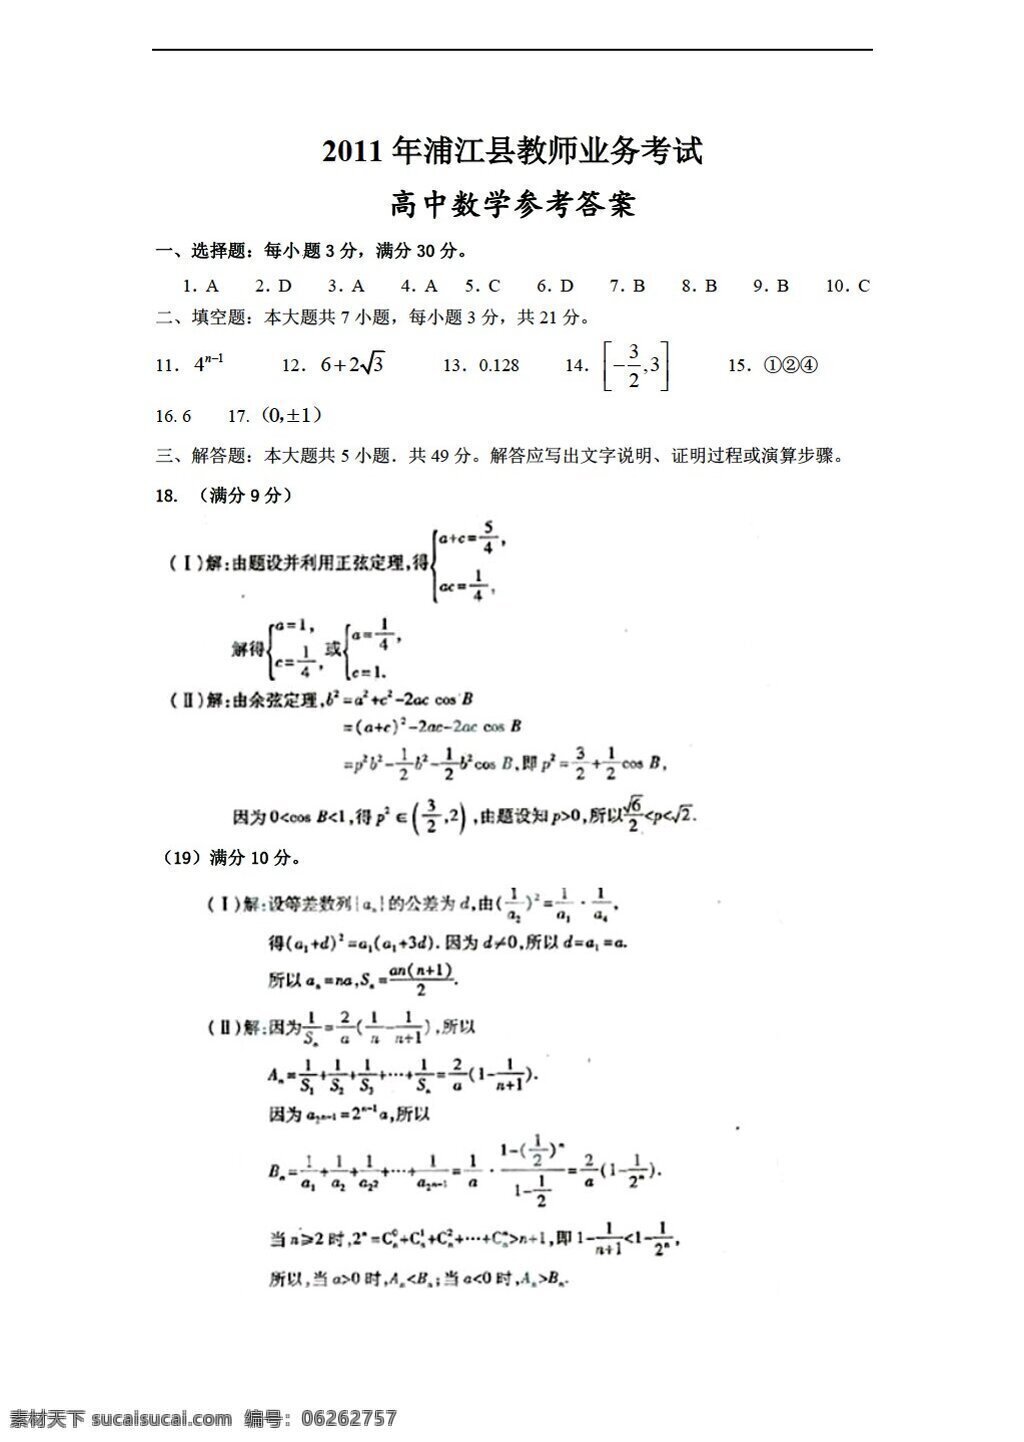 数学 会考 专区 浦江县 教师 业务 考试 会考专区 其它资料 试卷